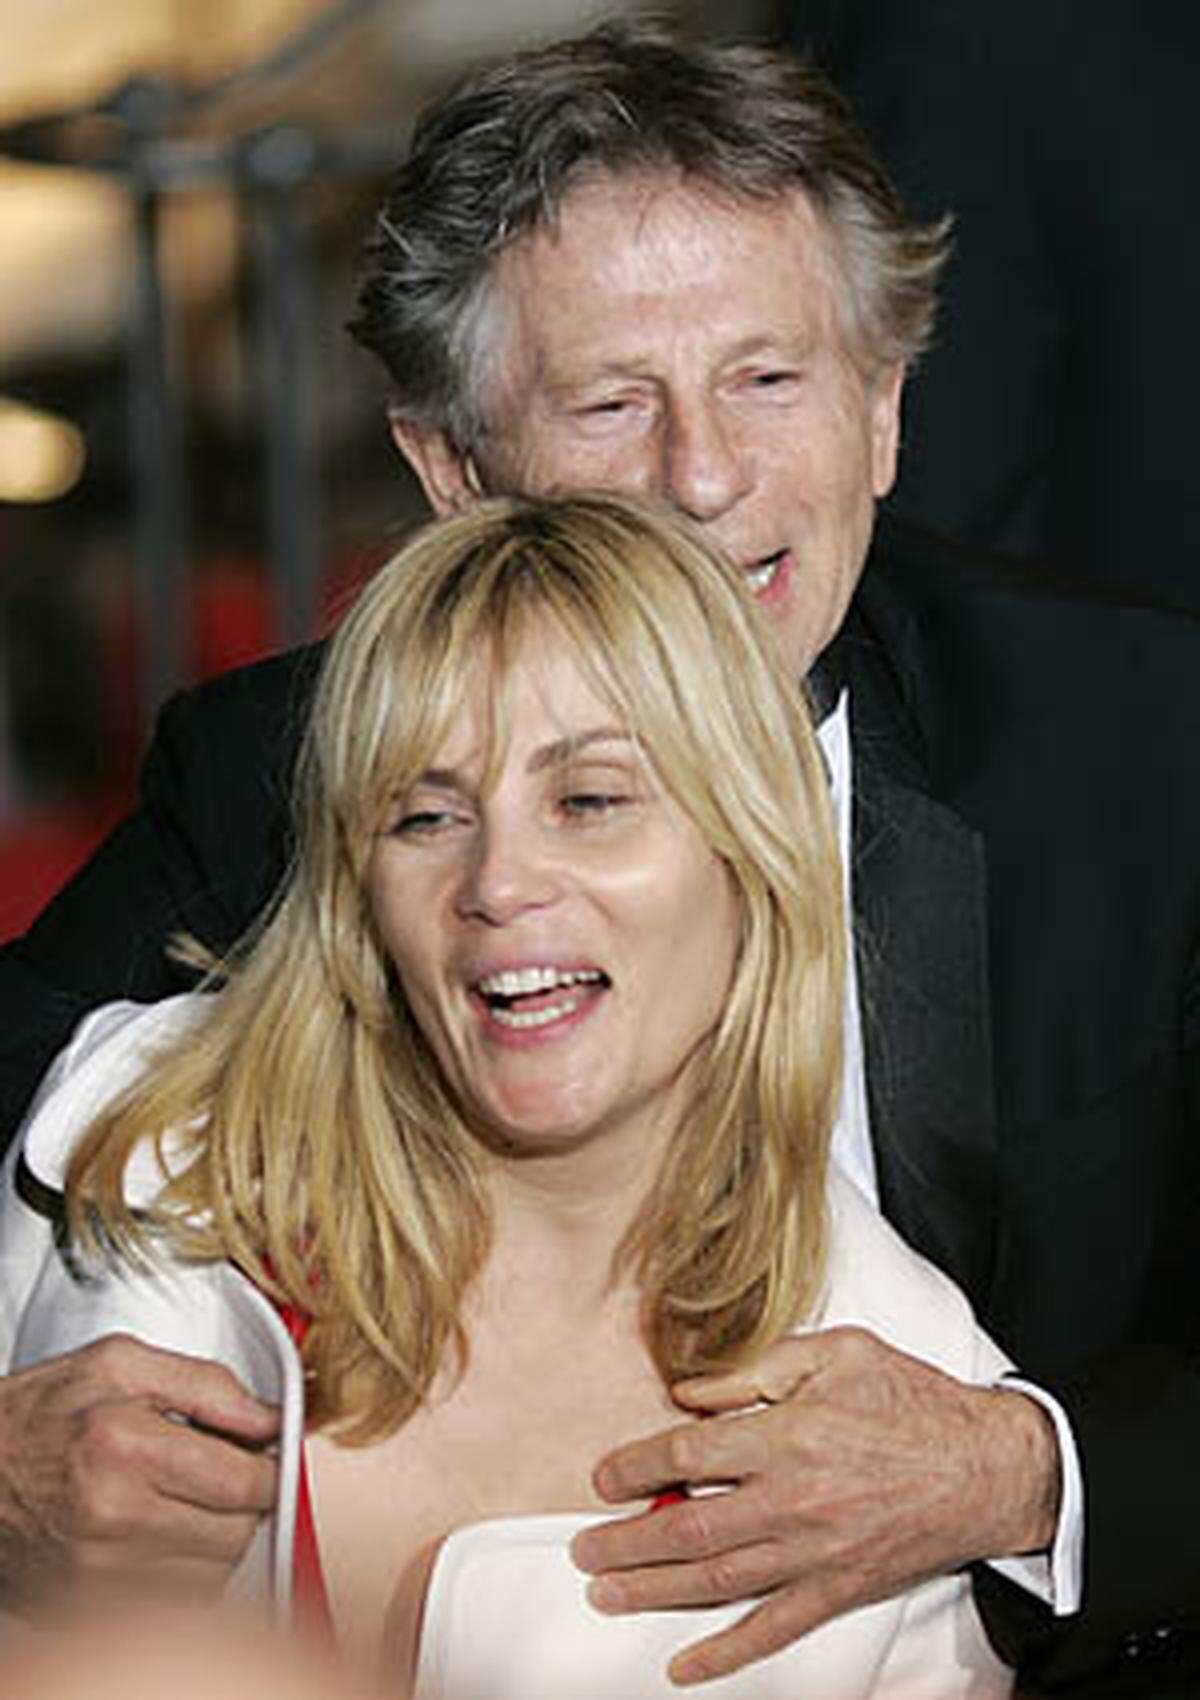 Inzwischen ist Polanski wieder verheiratet: Er lebt in Frankreich mit der französischen Schauspielerin Emmanuelle Seigner zusammen, mit der er zwei Kinder hat.